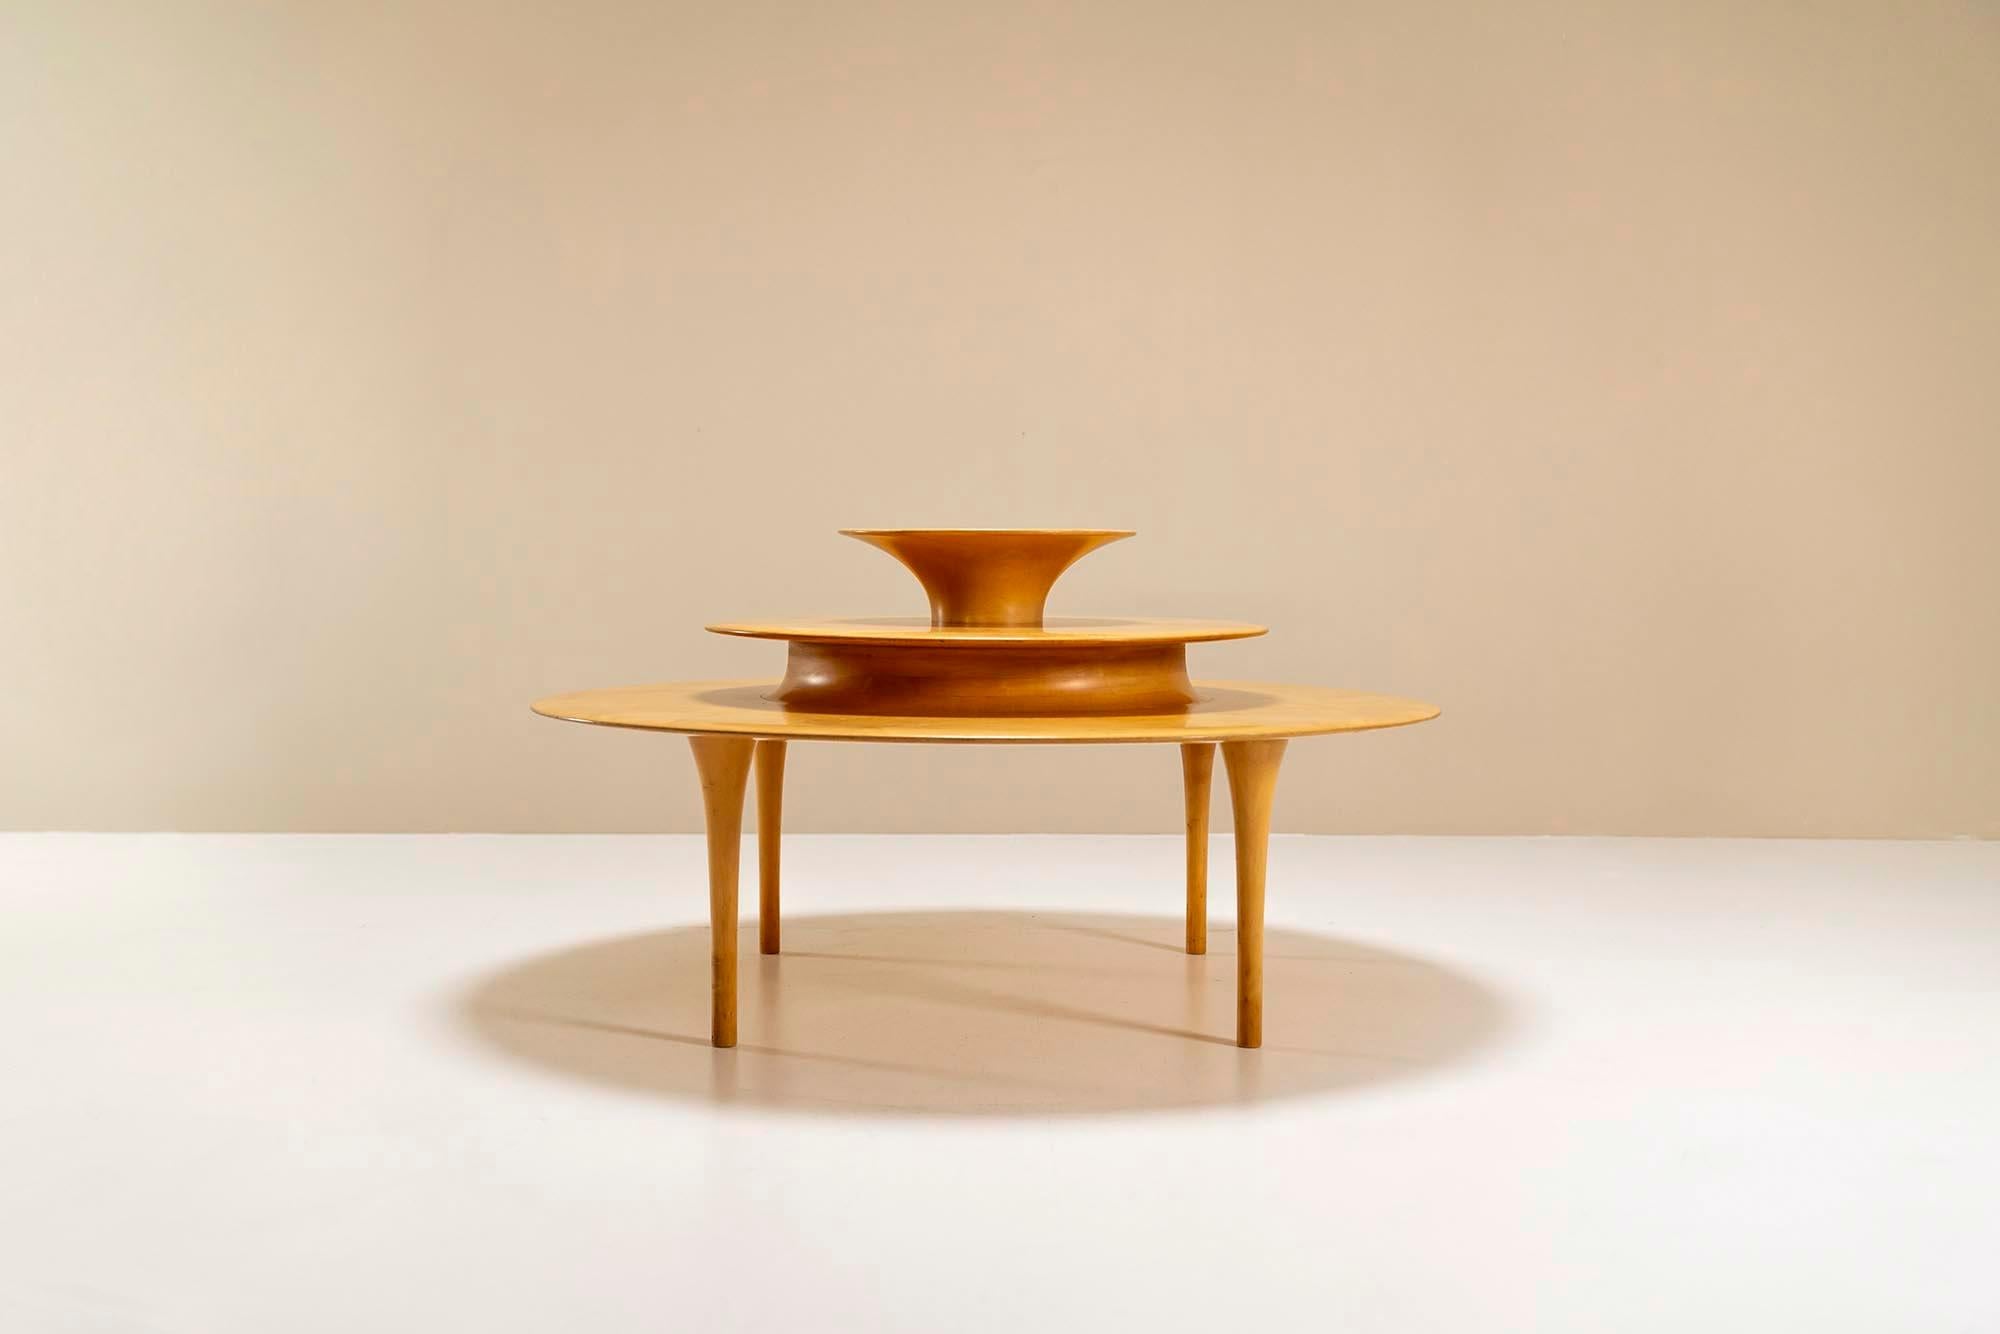 Une table basse sans pareille réalisée par la légendaire designer danoise Nanna Ditzel pour BRDR. Kruger des années 1980. Ce design est principalement dû au rôle de Grete Jalk dans la relance des expositions de menuiserie de l'Association des